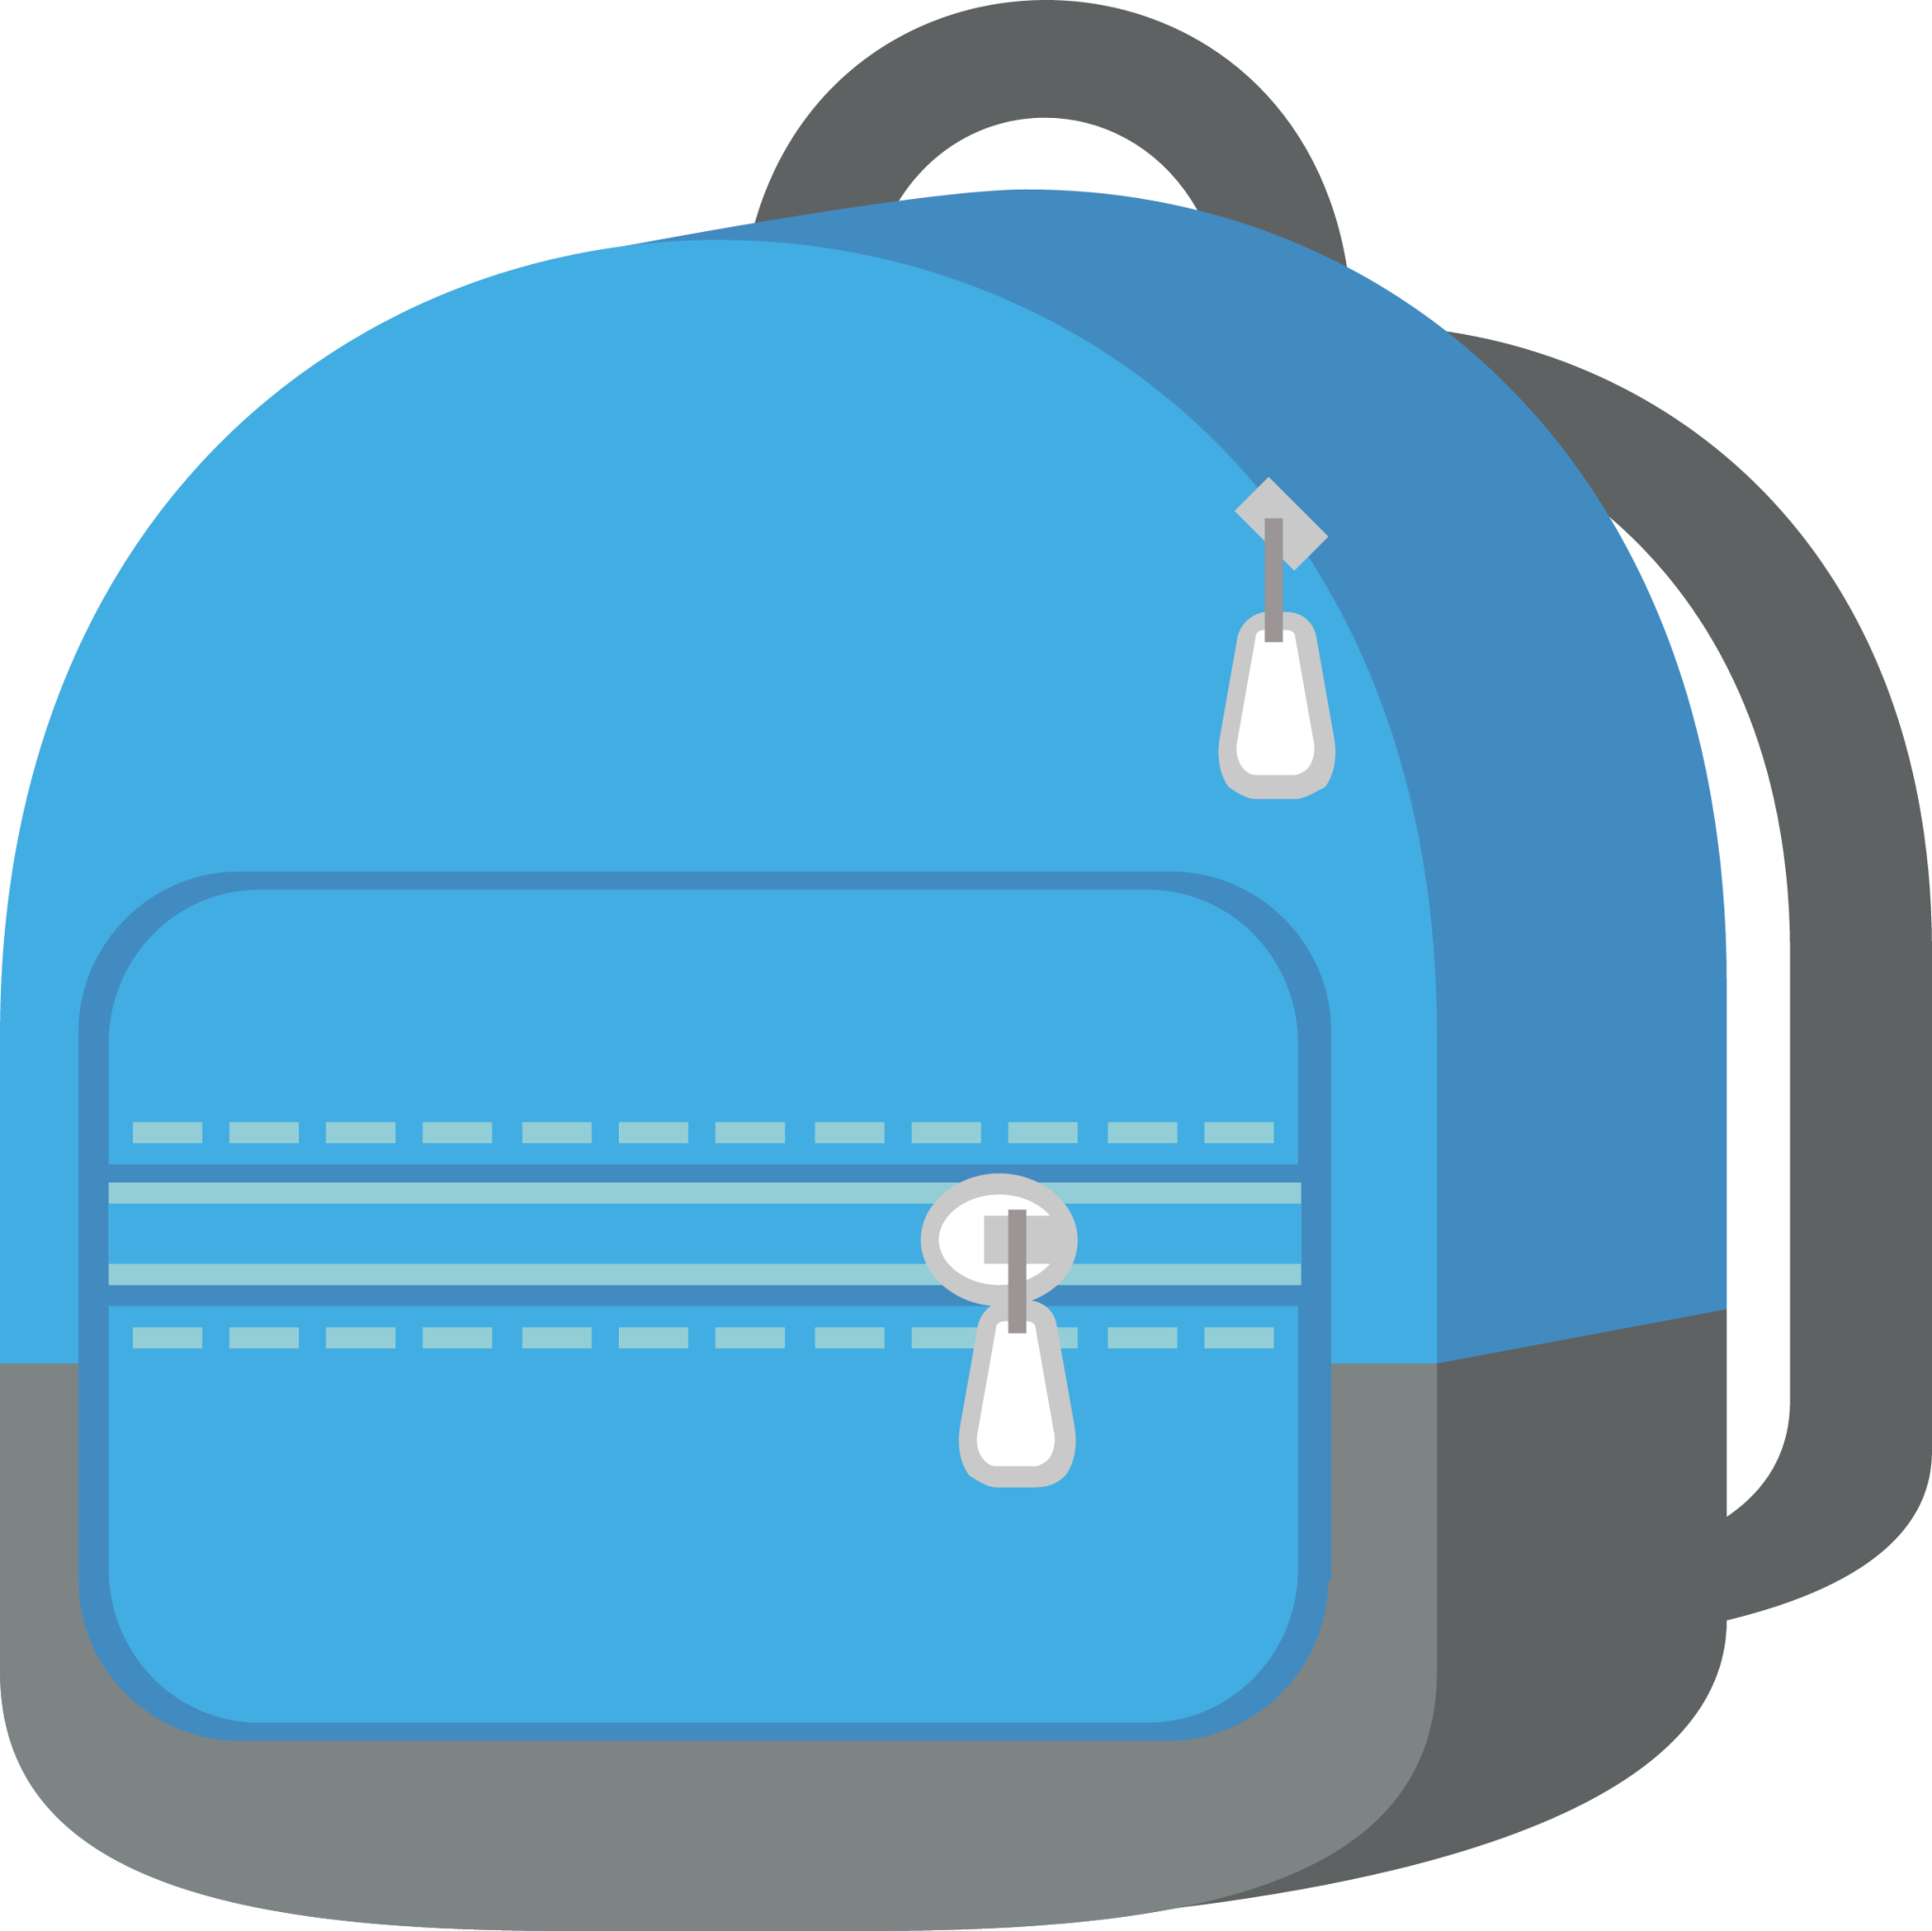 school satchel emoji